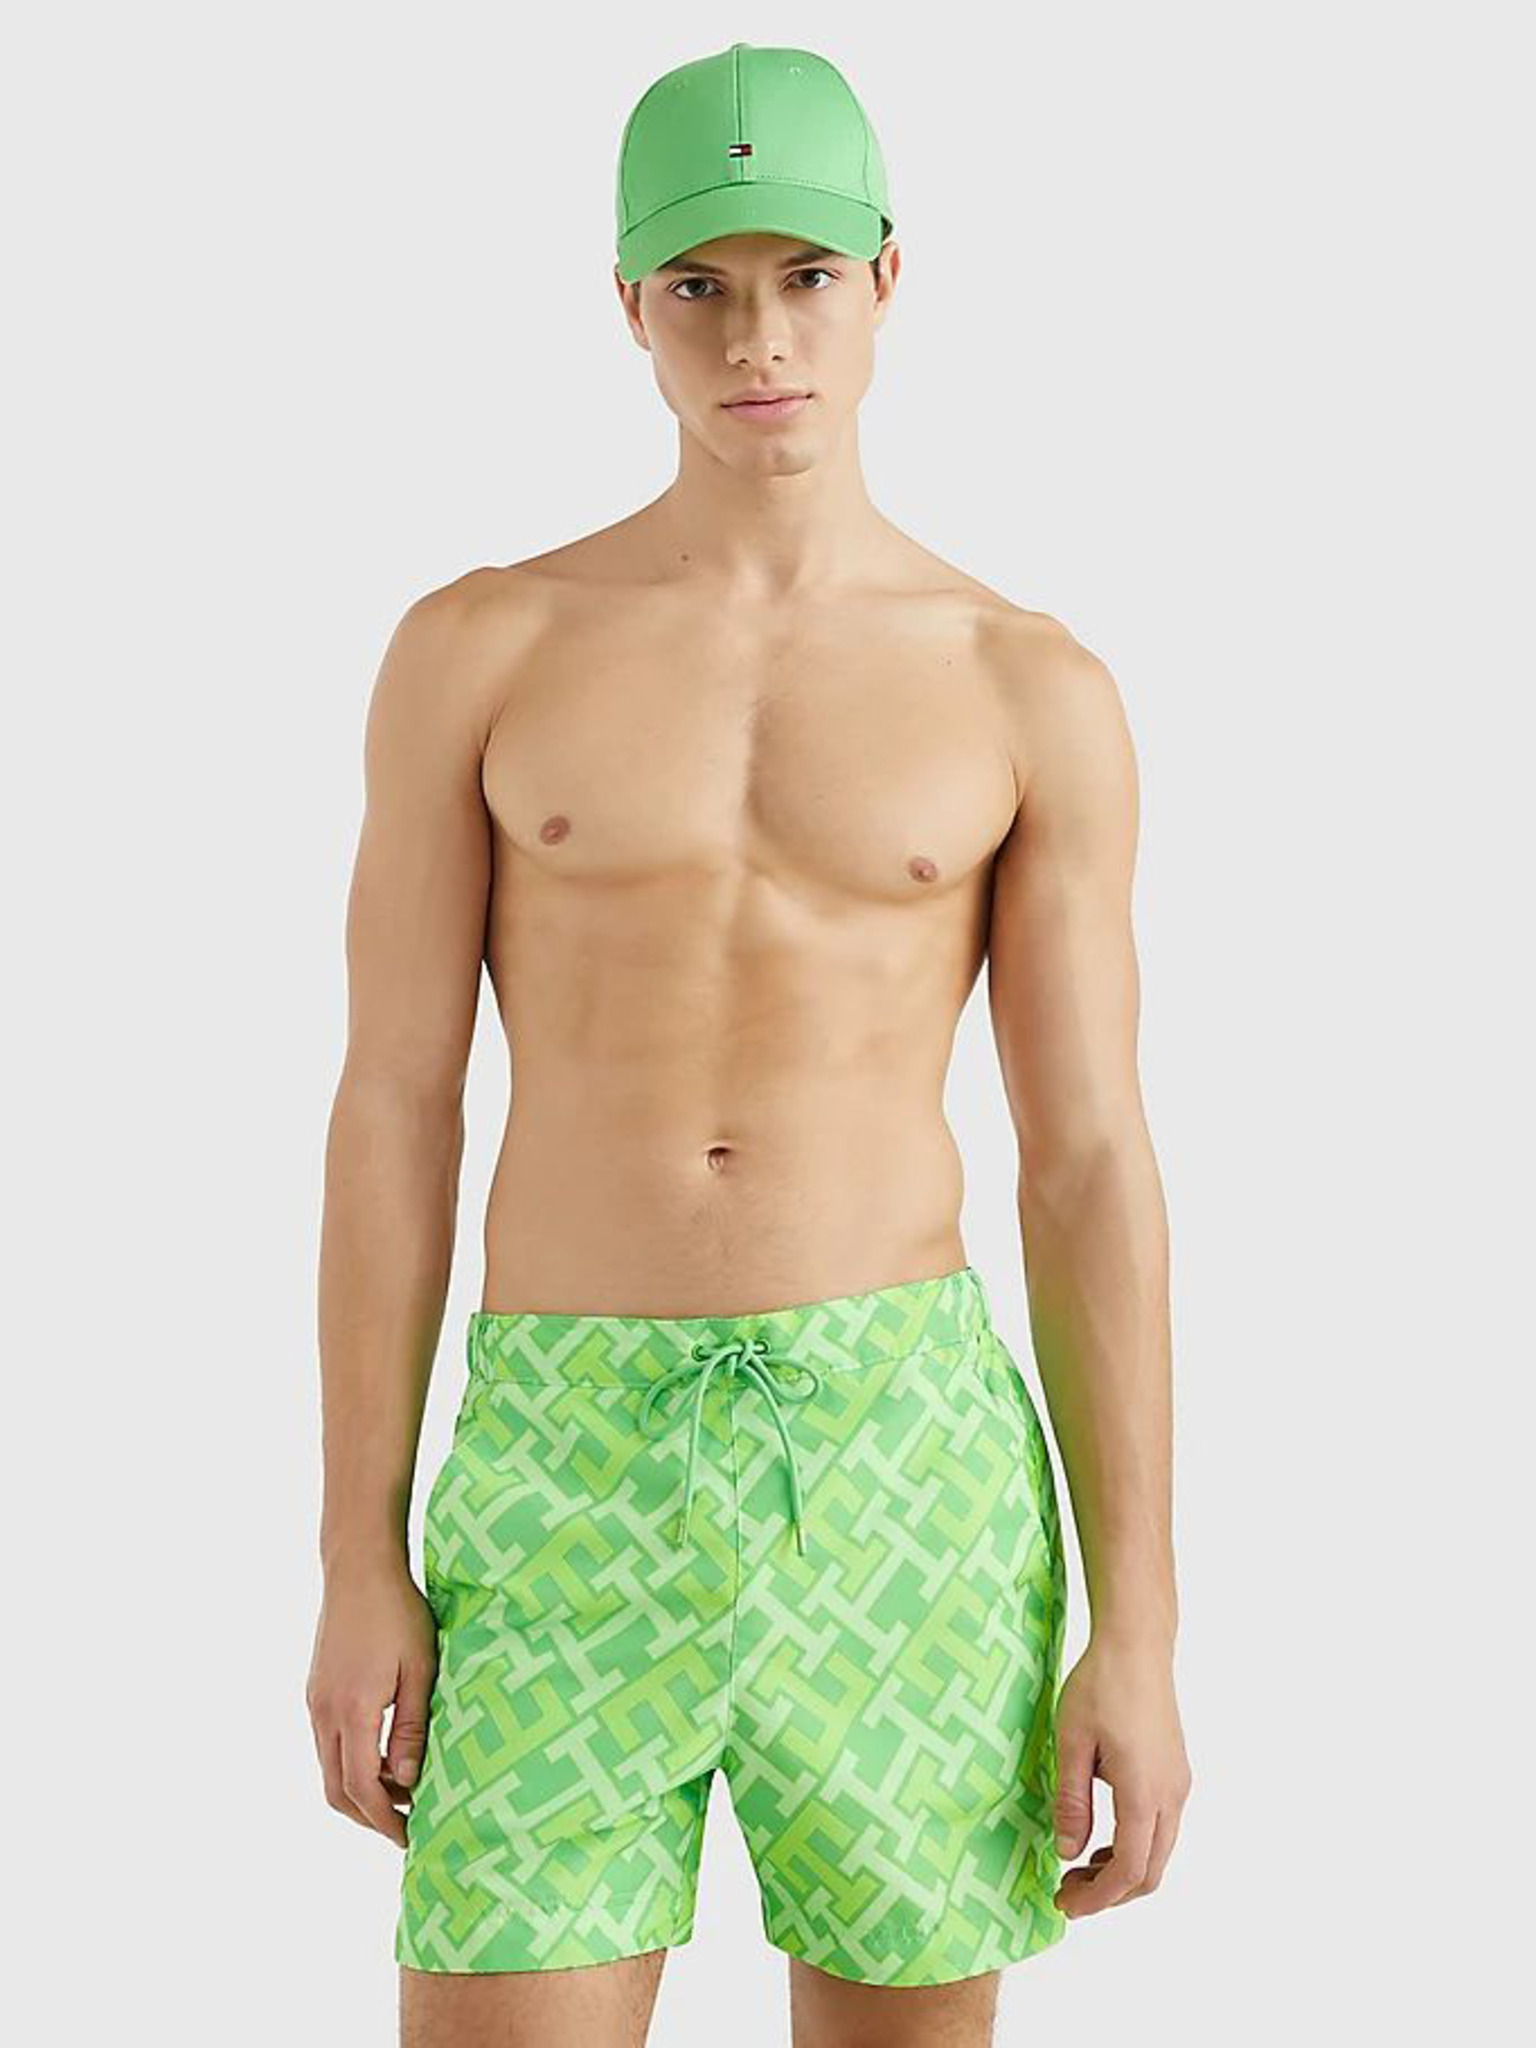 Plavky Tommy Hilfiger Underwear